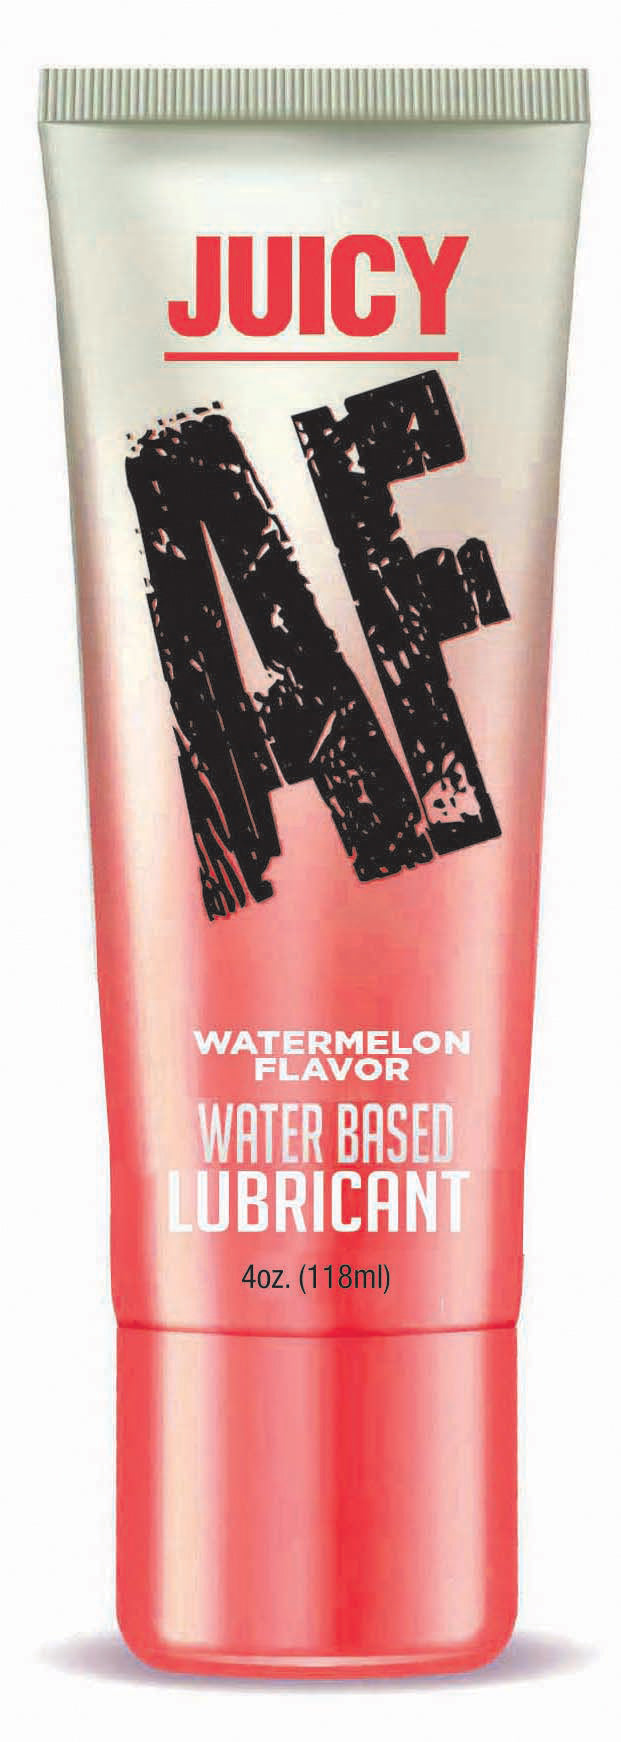 Juicy Af - Watermelon Water Based Flavored Lubricant 4oz